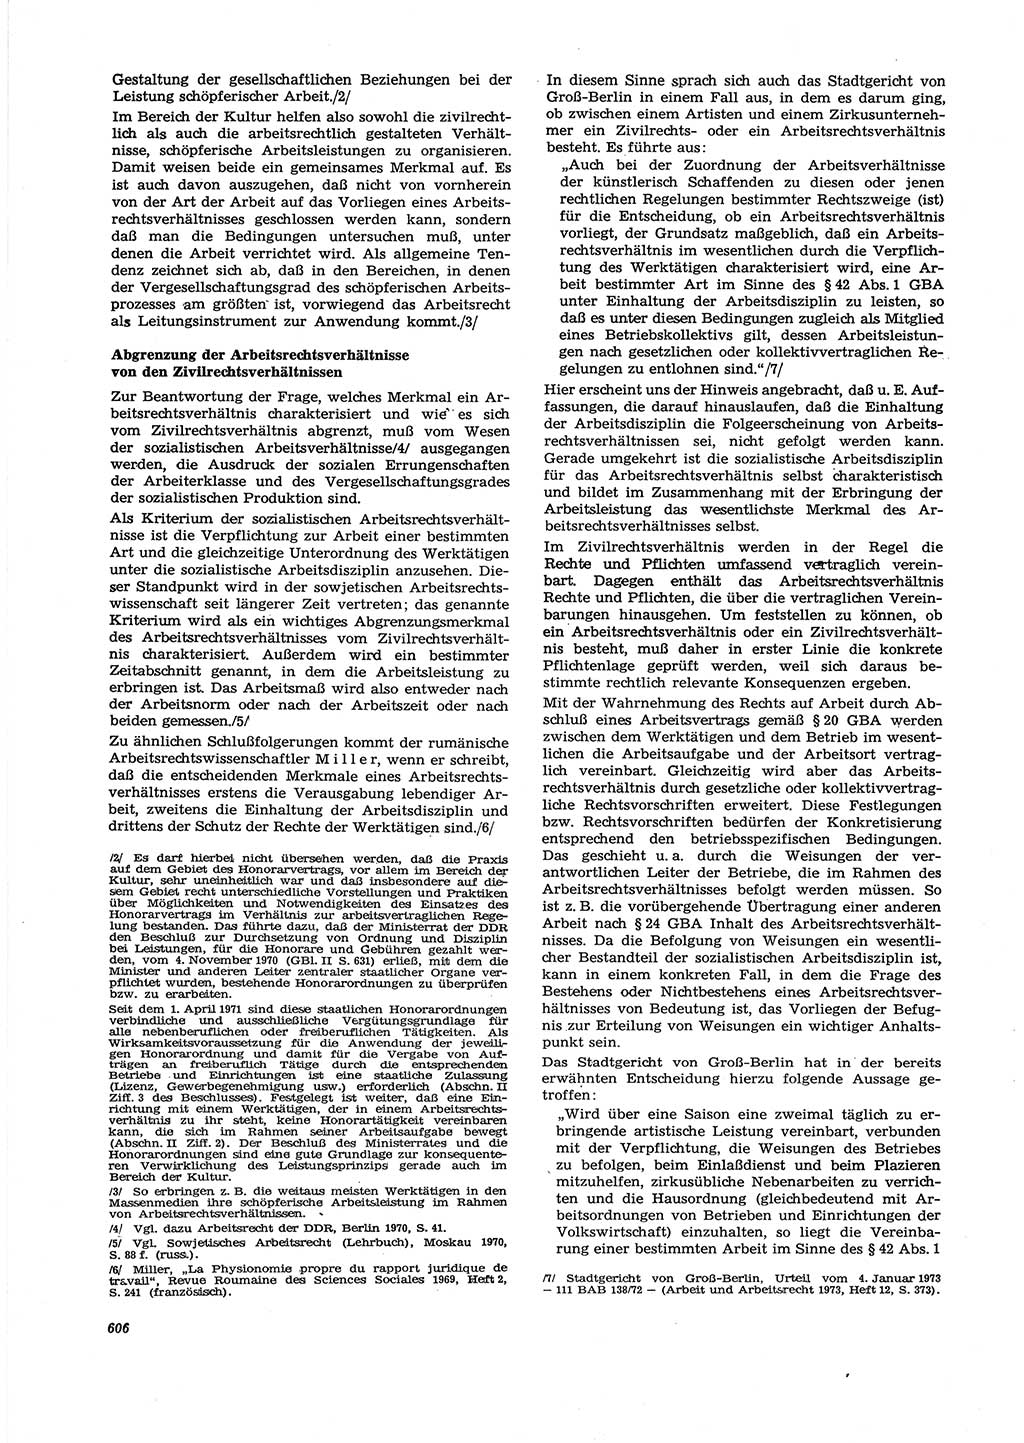 Neue Justiz (NJ), Zeitschrift für Recht und Rechtswissenschaft [Deutsche Demokratische Republik (DDR)], 27. Jahrgang 1973, Seite 606 (NJ DDR 1973, S. 606)